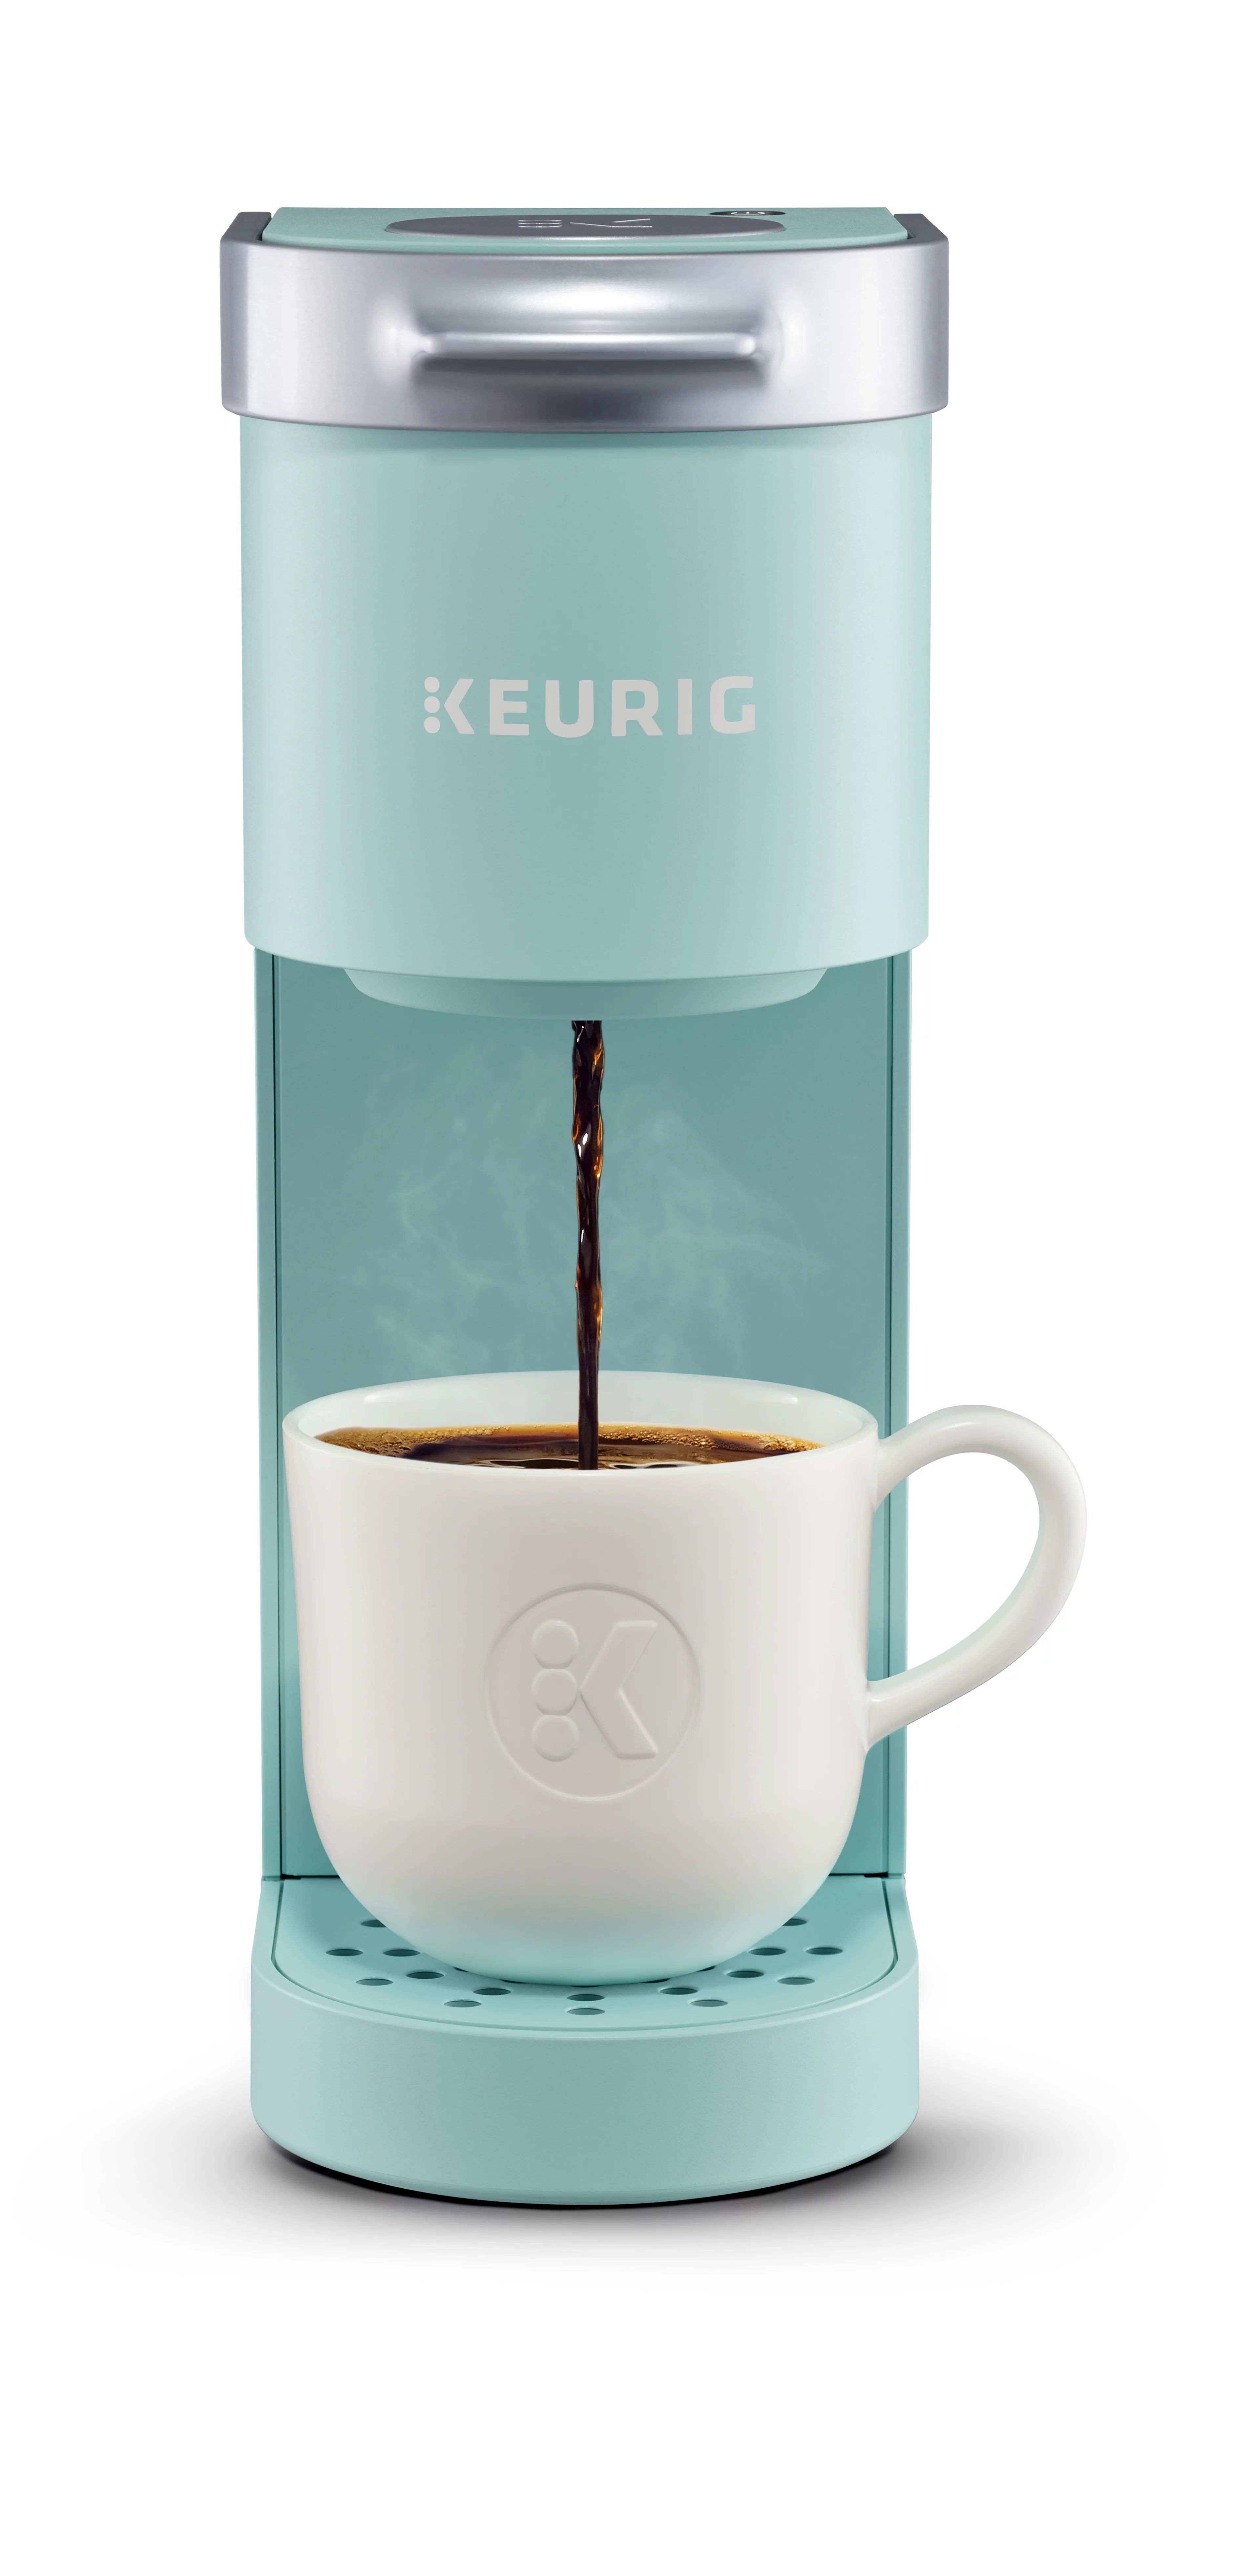 Keurig K-Mini Single Serve Coffee Maker, Oasis | Walmart (US)